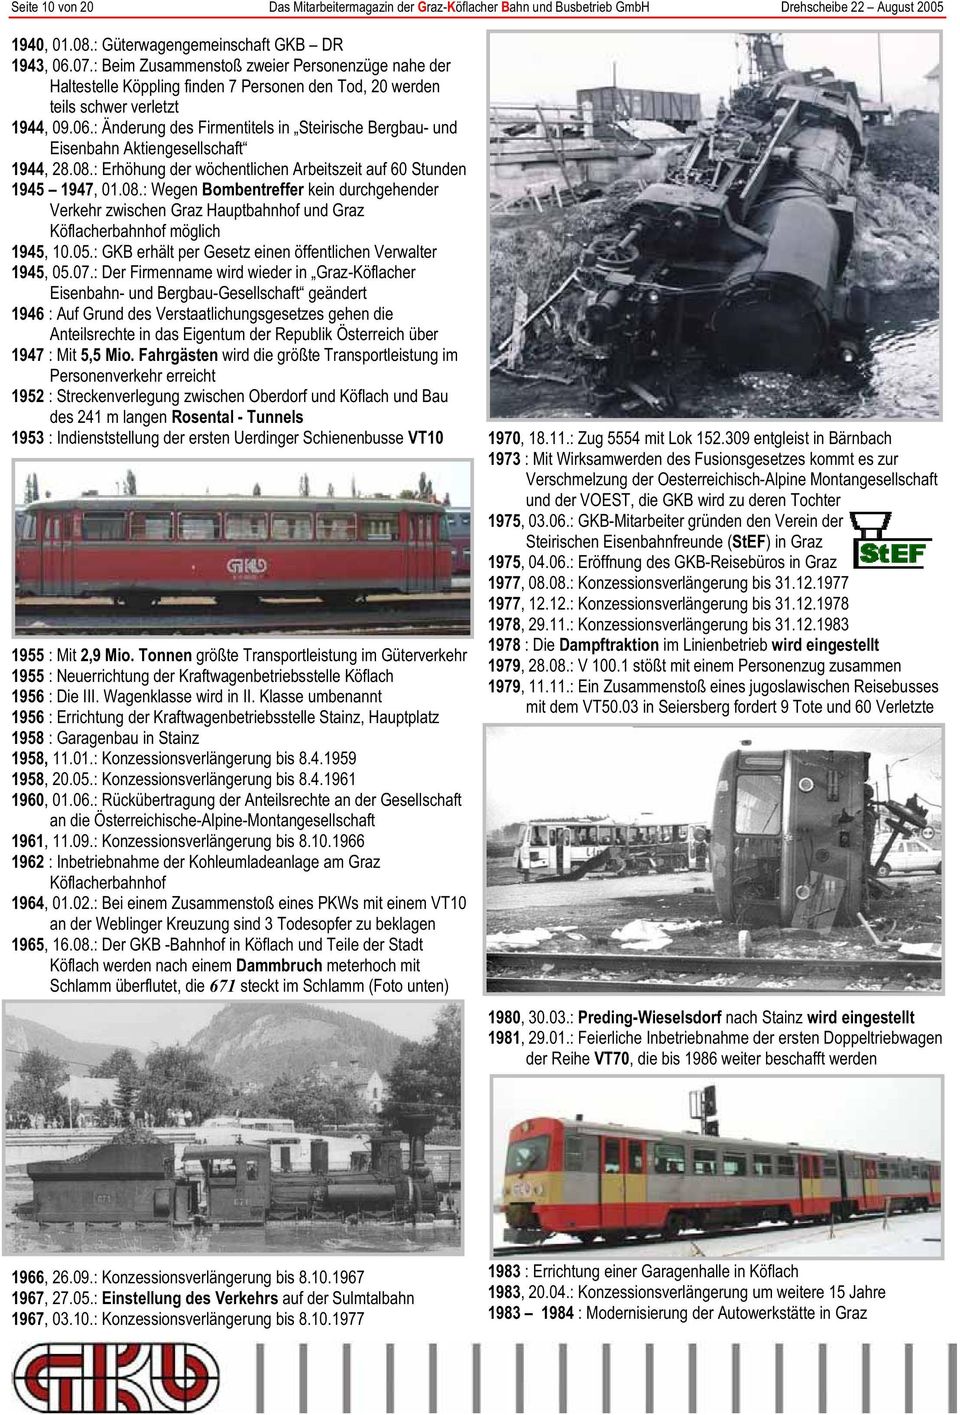 : Änderung des Firmentitels in Steirische Bergbau- und Eisenbahn Aktiengesellschaft 1944, 28.08.